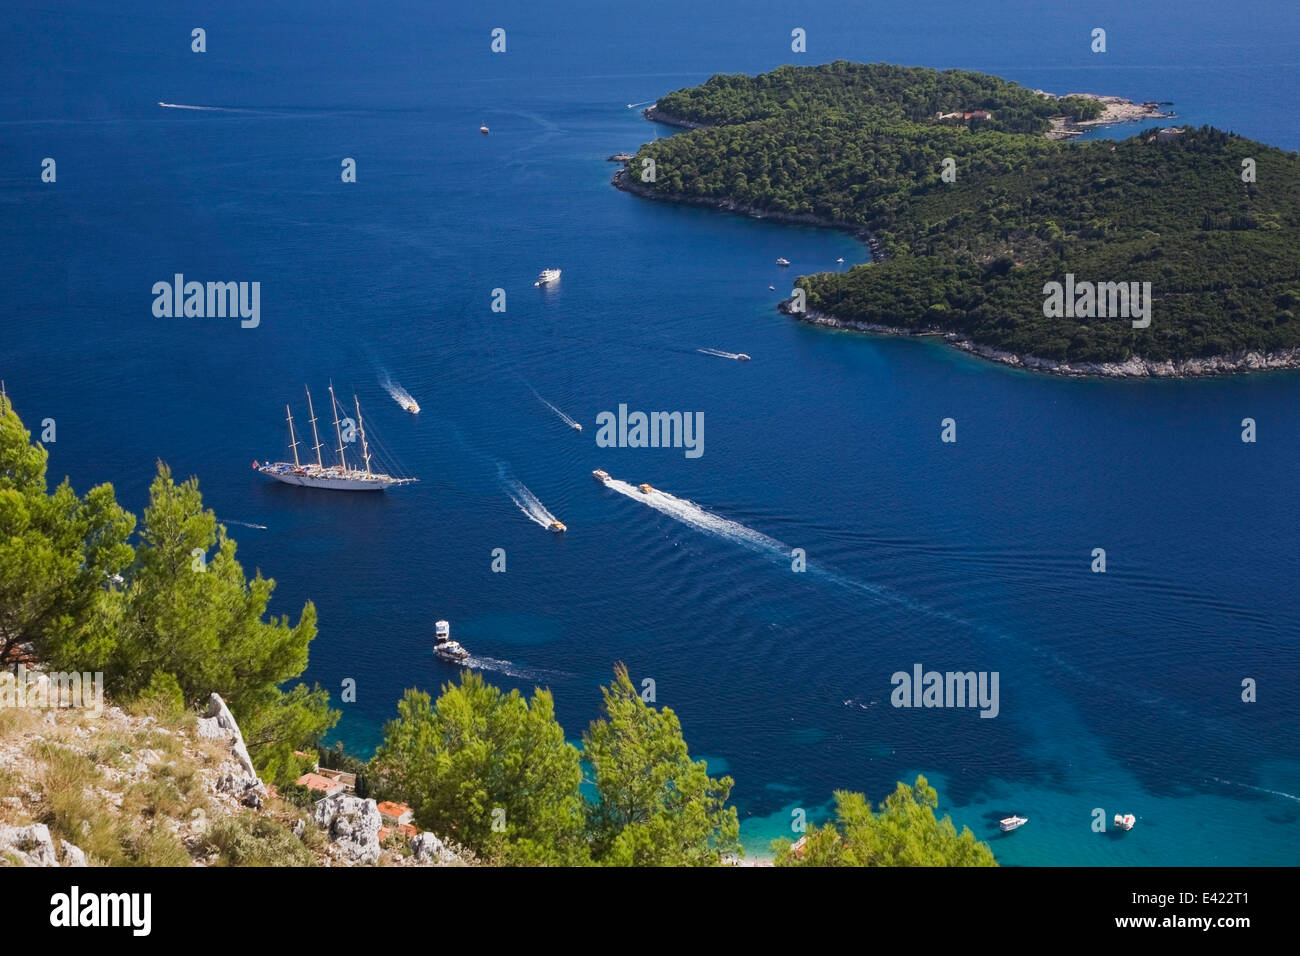 Vista desde el Monte Srd de barcos de cruceros y veleros en el mar Adriático, Dalmacia, Dubrovnik, Croacia, la región de Europa oriental Foto de stock